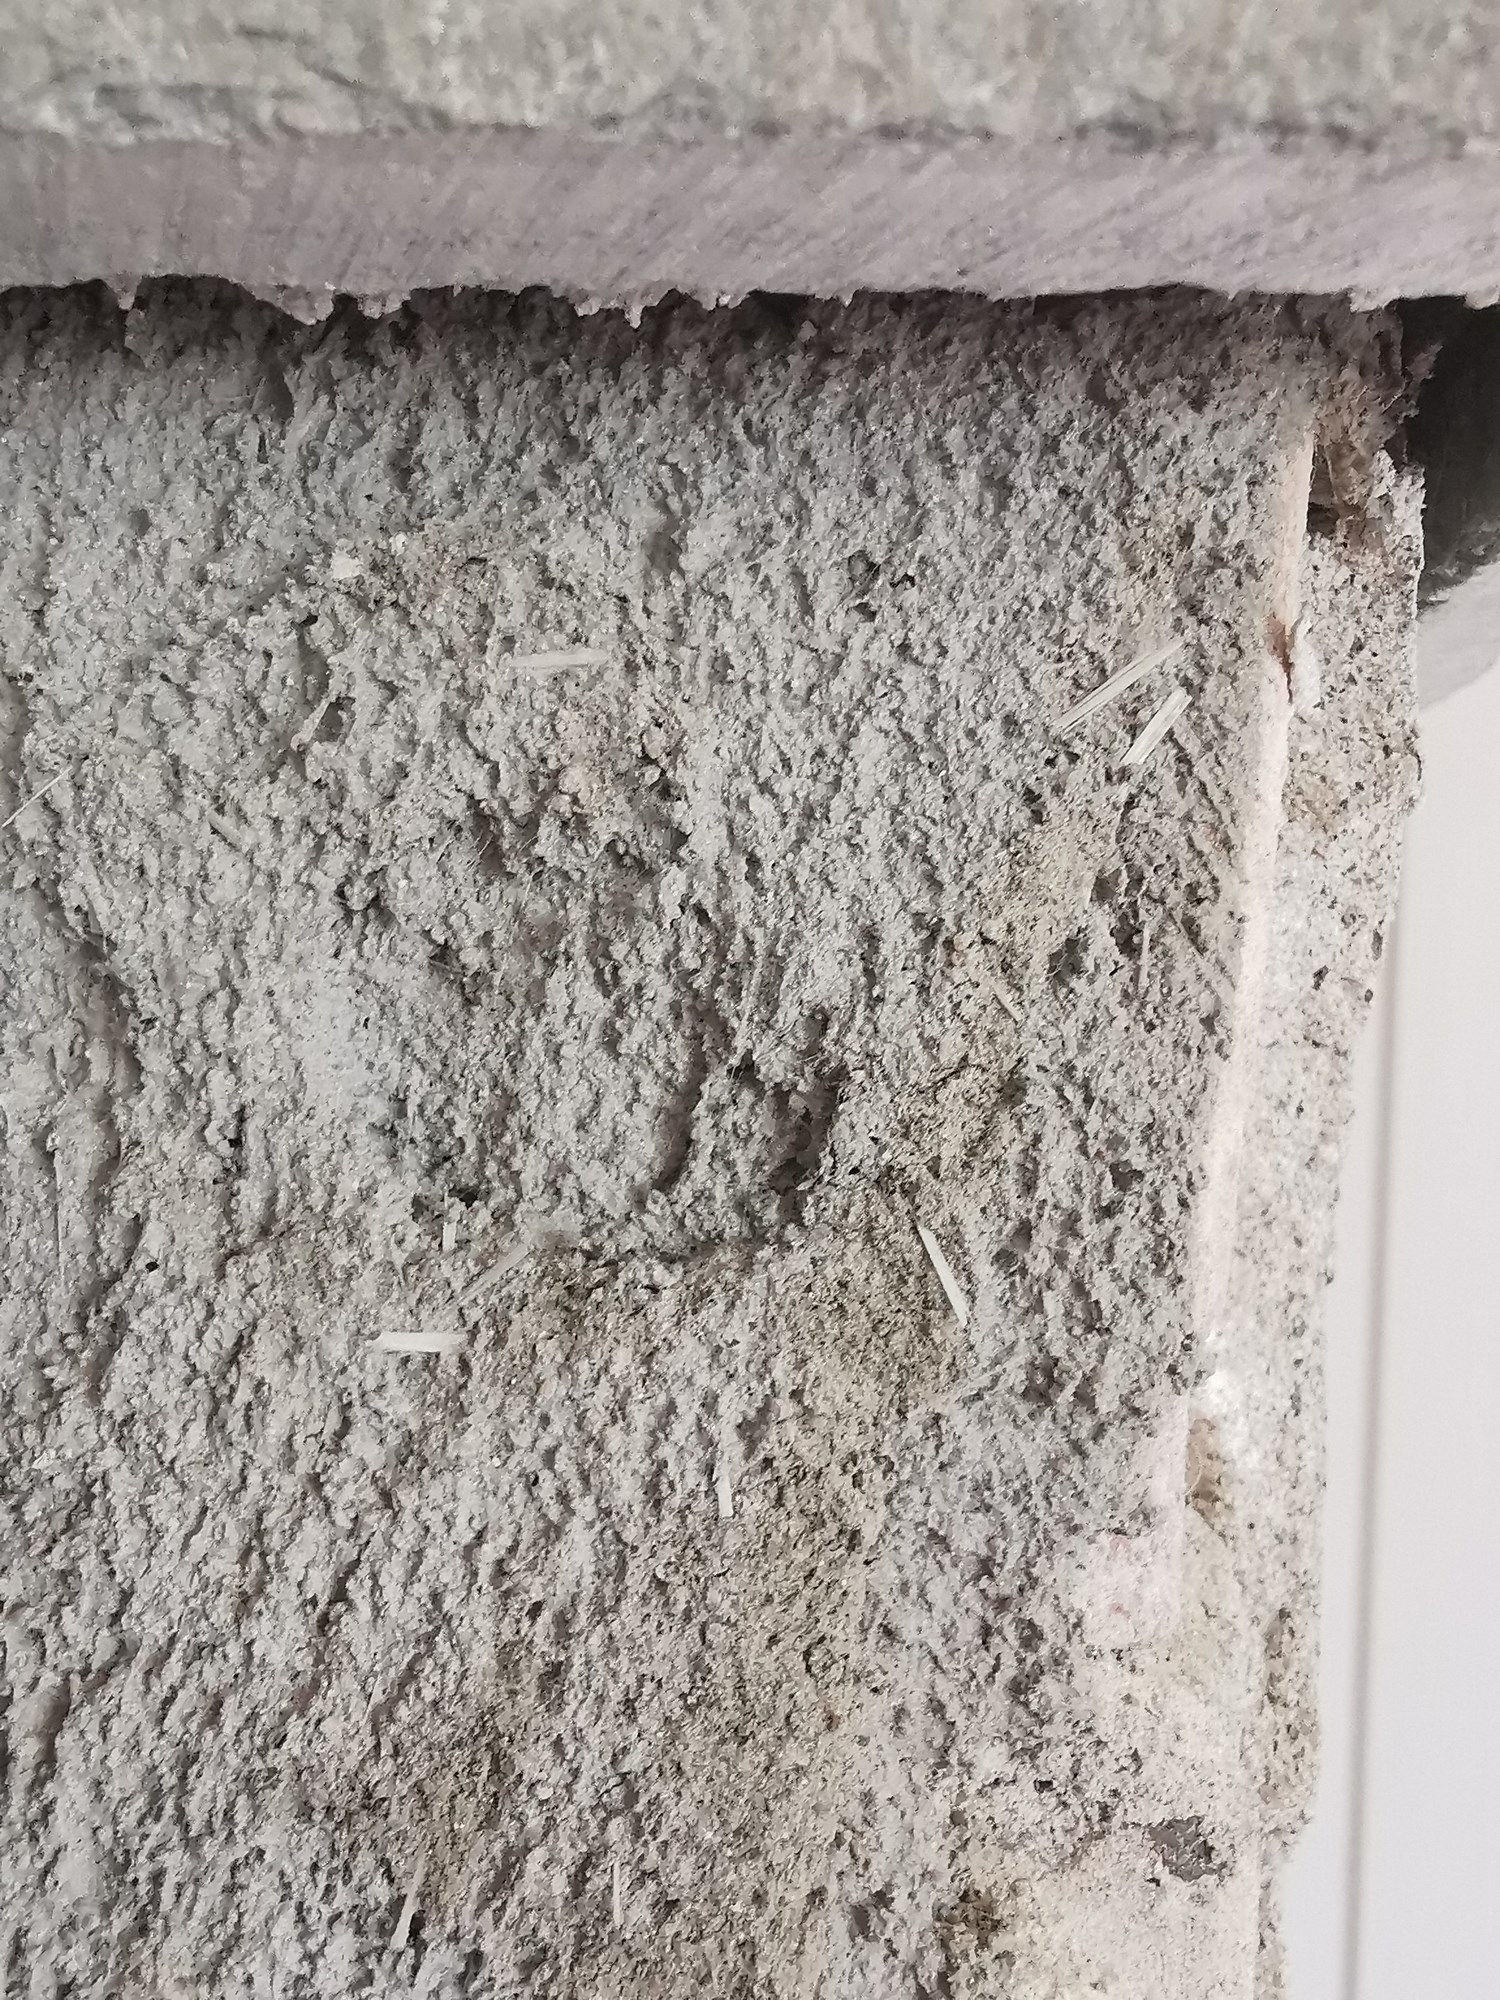 Glassvatt el asbest rundt mur rundt peis? - IMG_20220316_121432.jpg - Mbn34